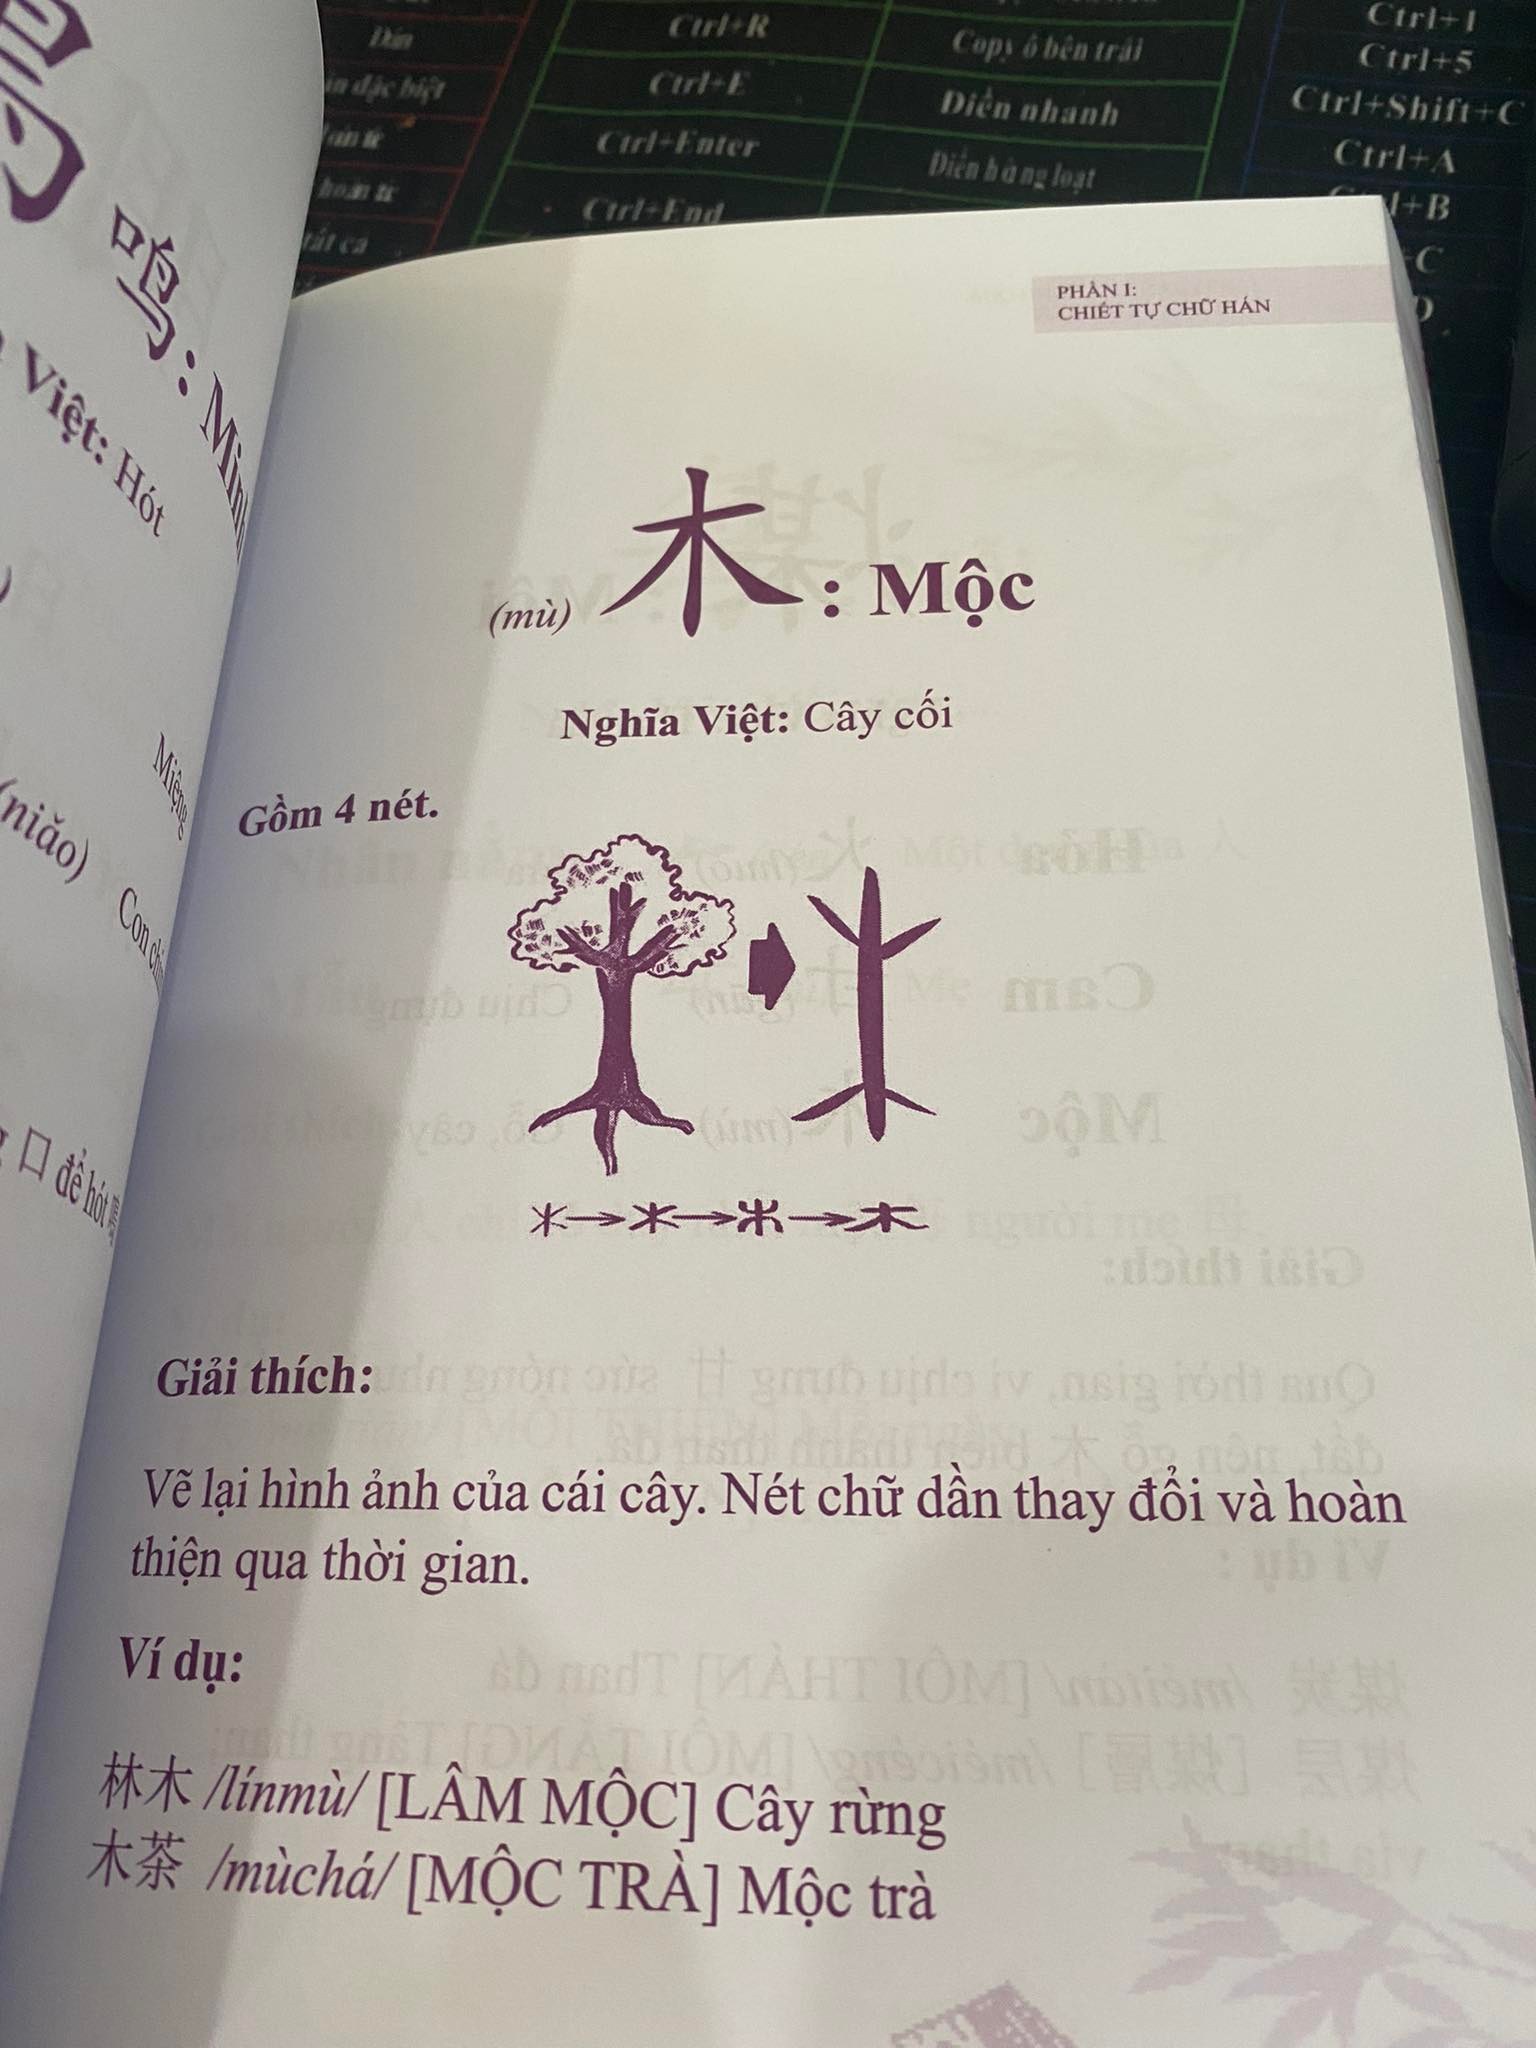 Sách-Combo:Nhớ Hán Tự Thông Qua Chiết Tự Chữ Hán+Vui học chữ Hán tập 1+ tập 2+DVD tài liệu